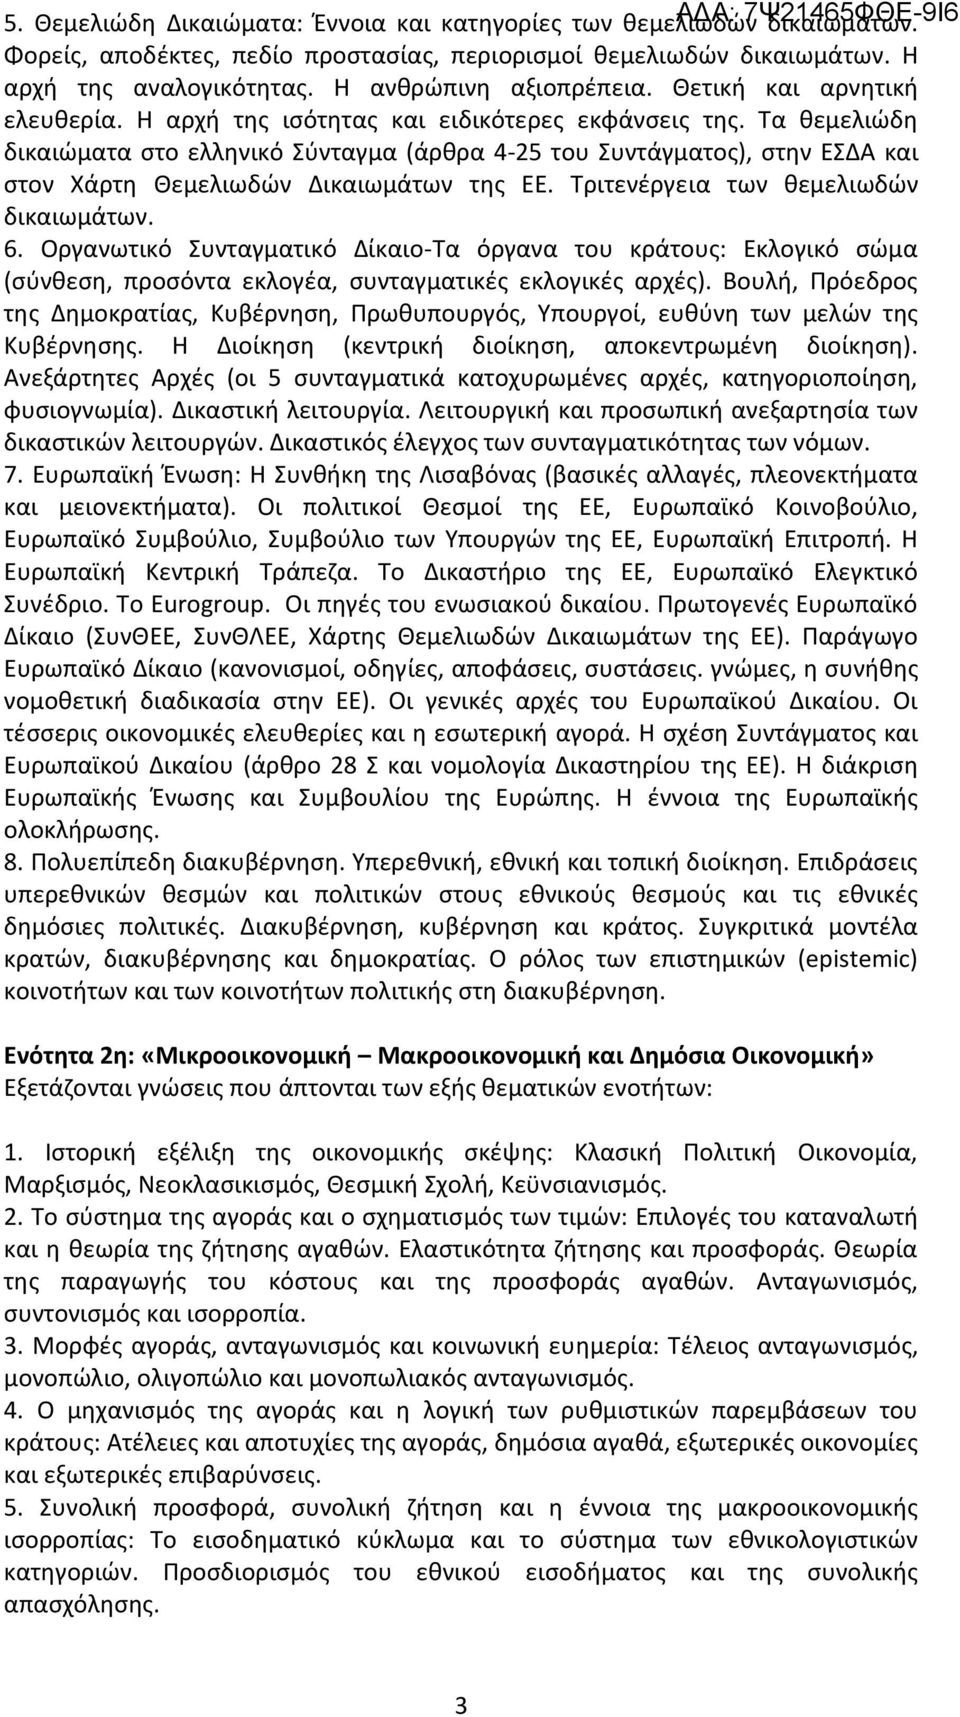 Τα θεμελιώδη δικαιώματα στο ελληνικό Σύνταγμα (άρθρα 4-25 του Συντάγματος), στην ΕΣΔΑ και στον Χάρτη Θεμελιωδών Δικαιωμάτων της ΕΕ. Τριτενέργεια των θεμελιωδών δικαιωμάτων. 6.